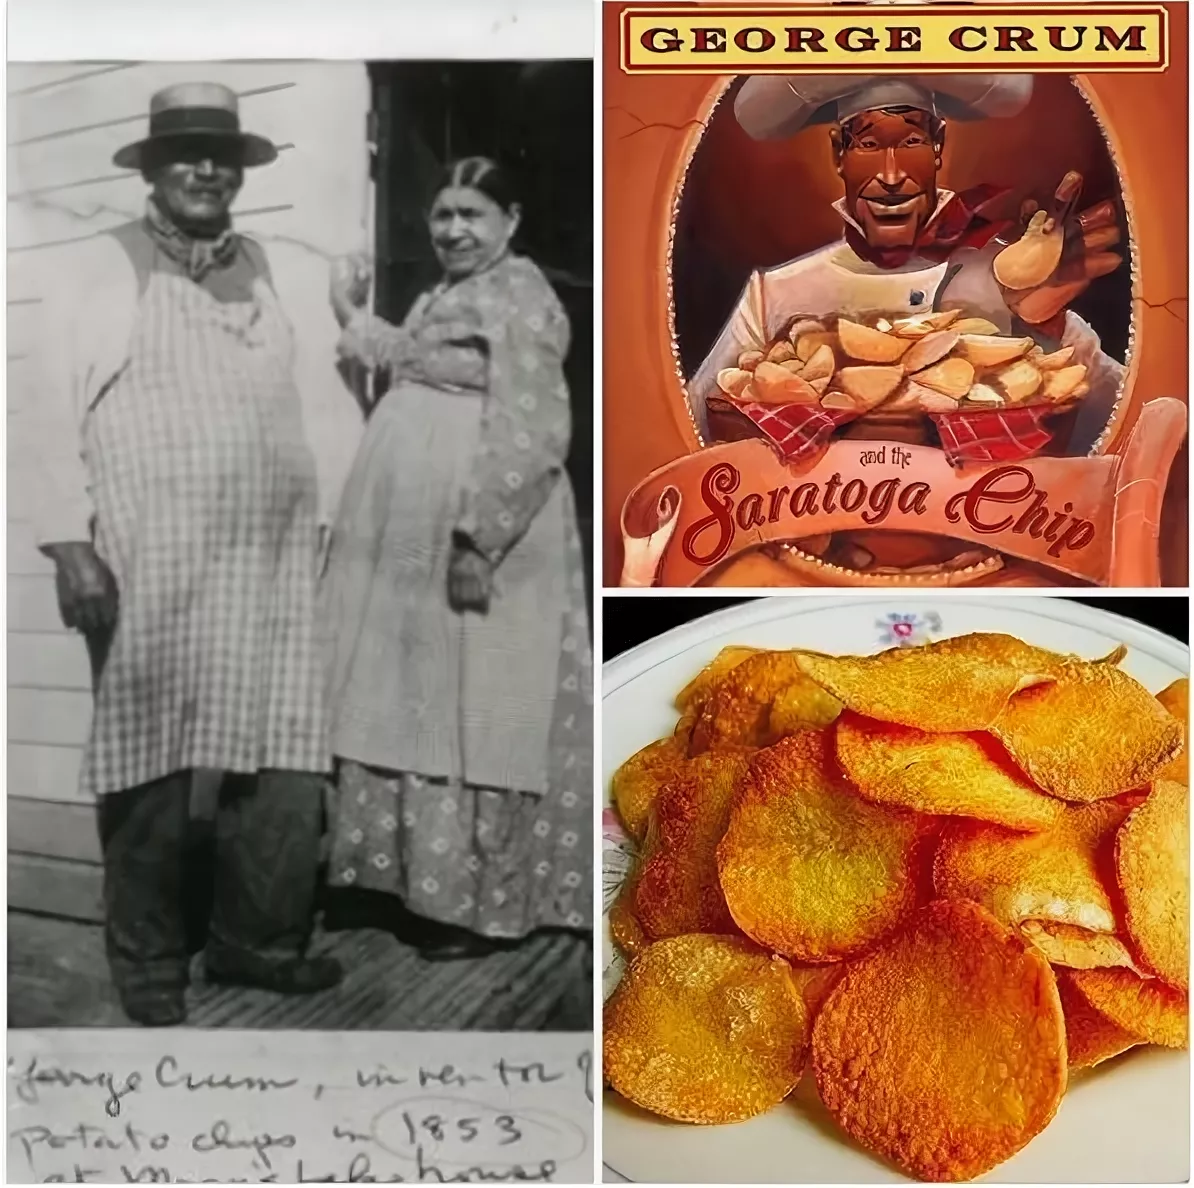 Картофельные чипсы в каком году придумали. Джордж Крам создатель чипсов. Уильям Тэппендон чипсов. Шеф-повар Джордж Крам. Джордж Крам изобретатель чипсов портрет.